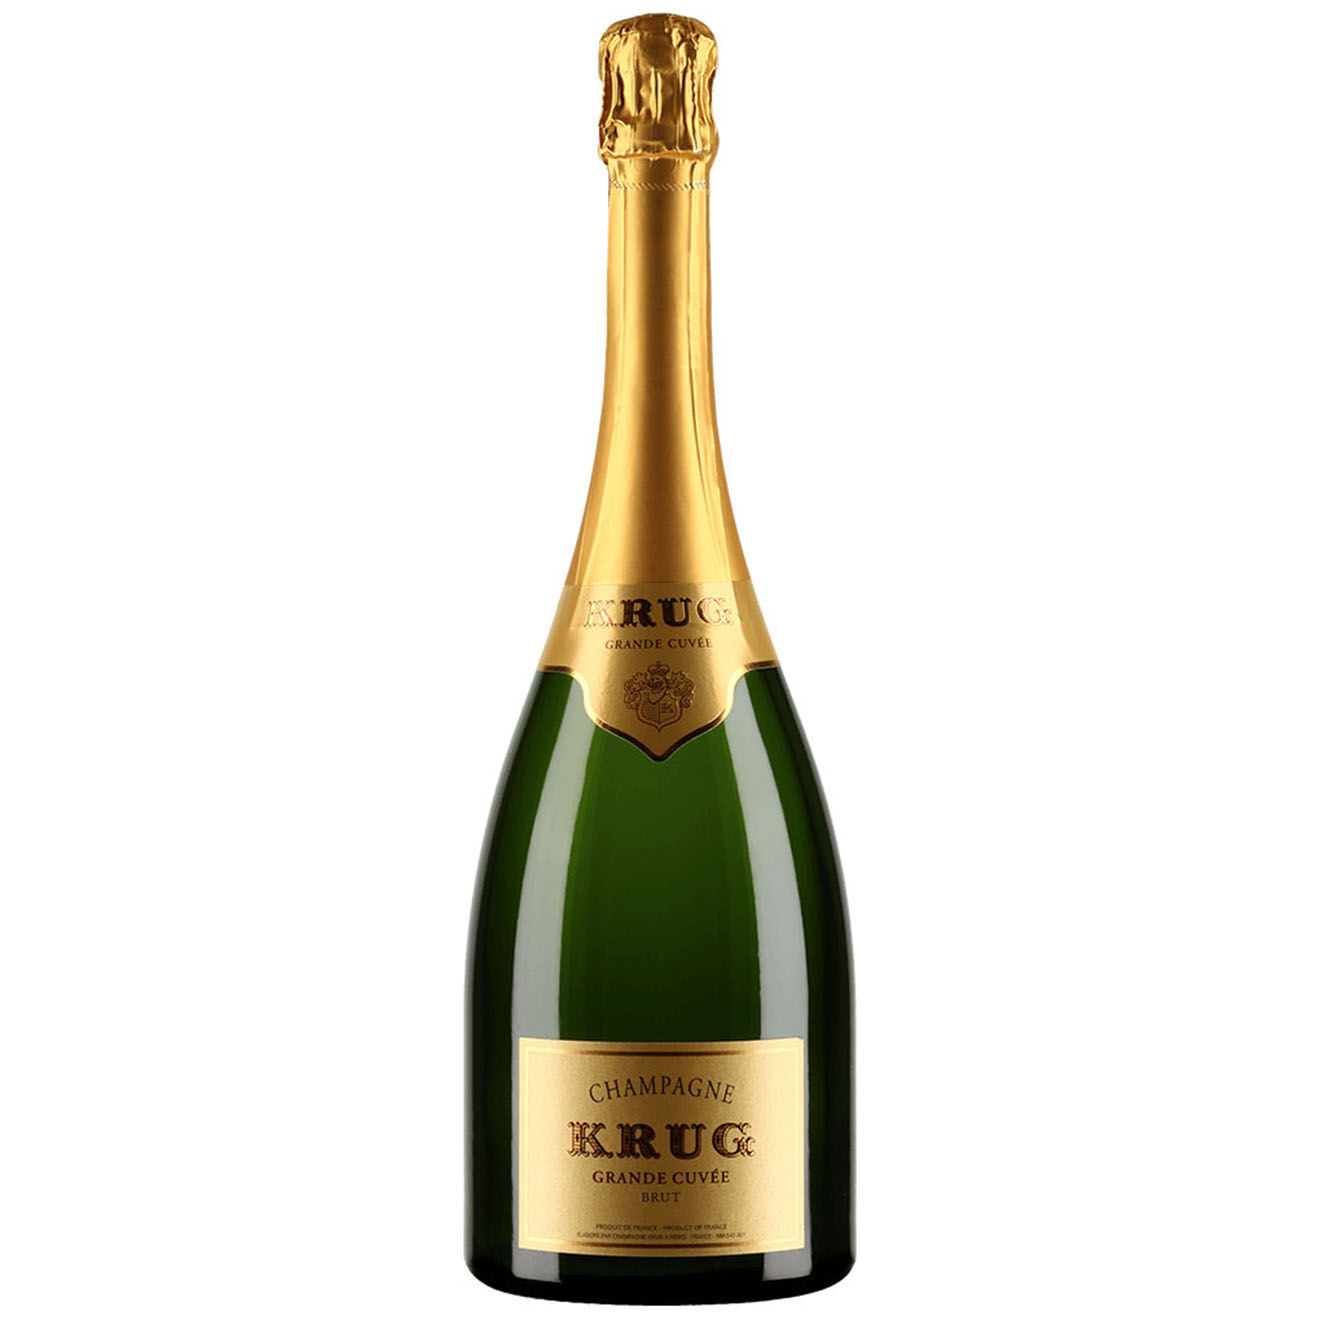 1 Champagne Brut Grande Cuvée 167ème ed. Krug 75cl